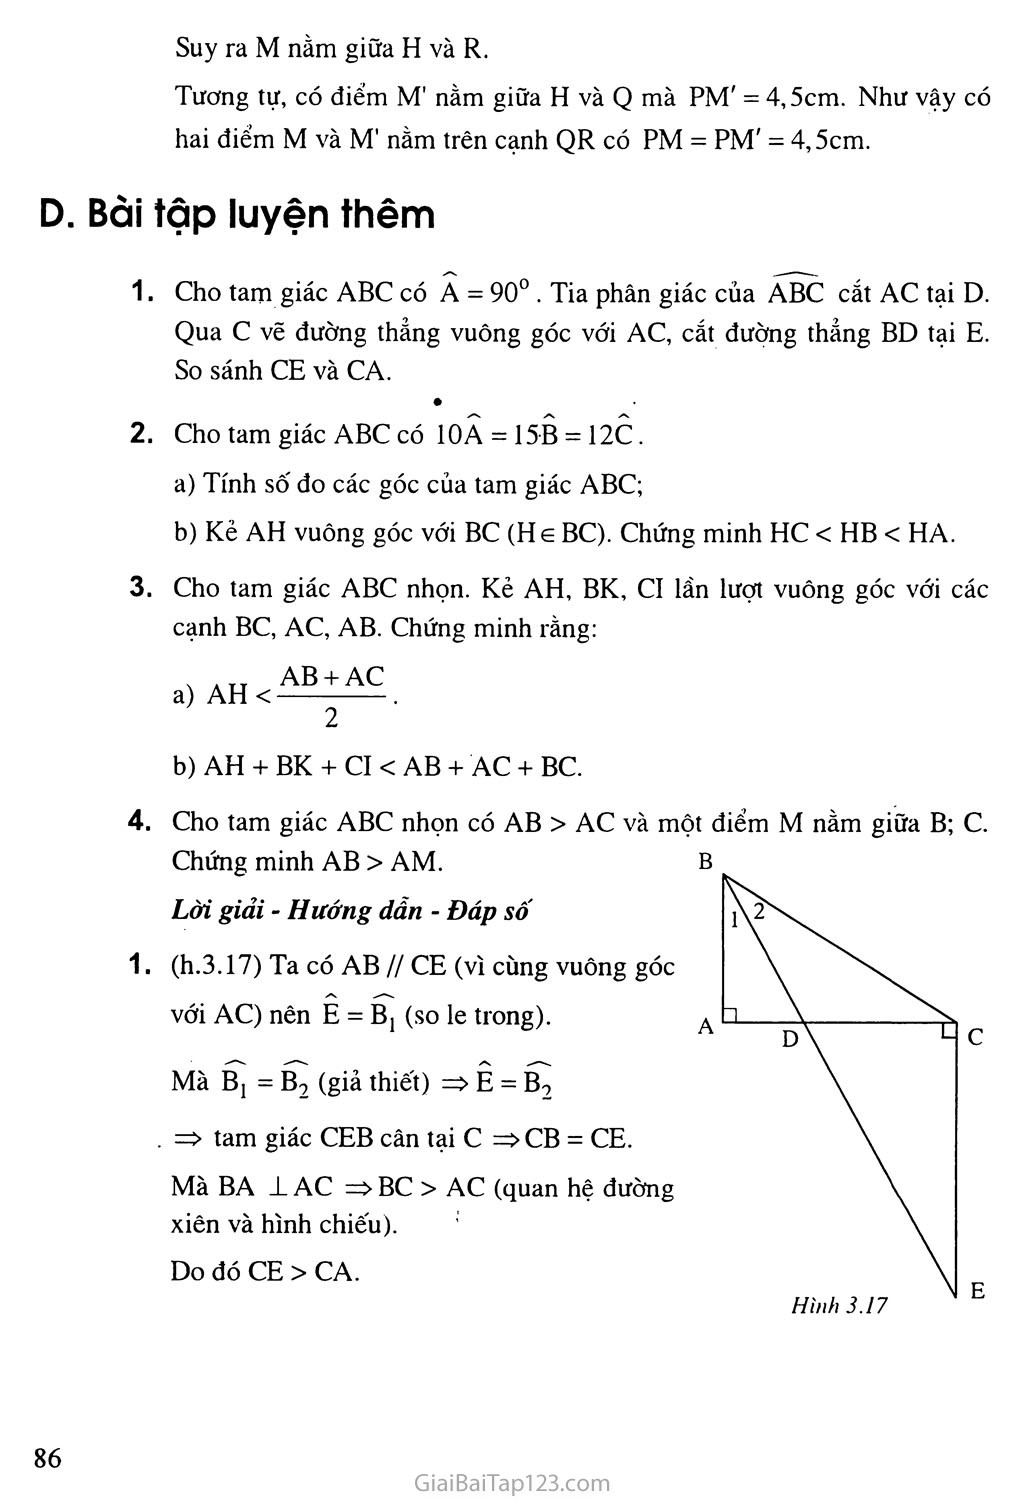 Bài 2. Quan hệ giữa đường vuông góc và đường xiên, đường xiên và hình chiếu trang 5